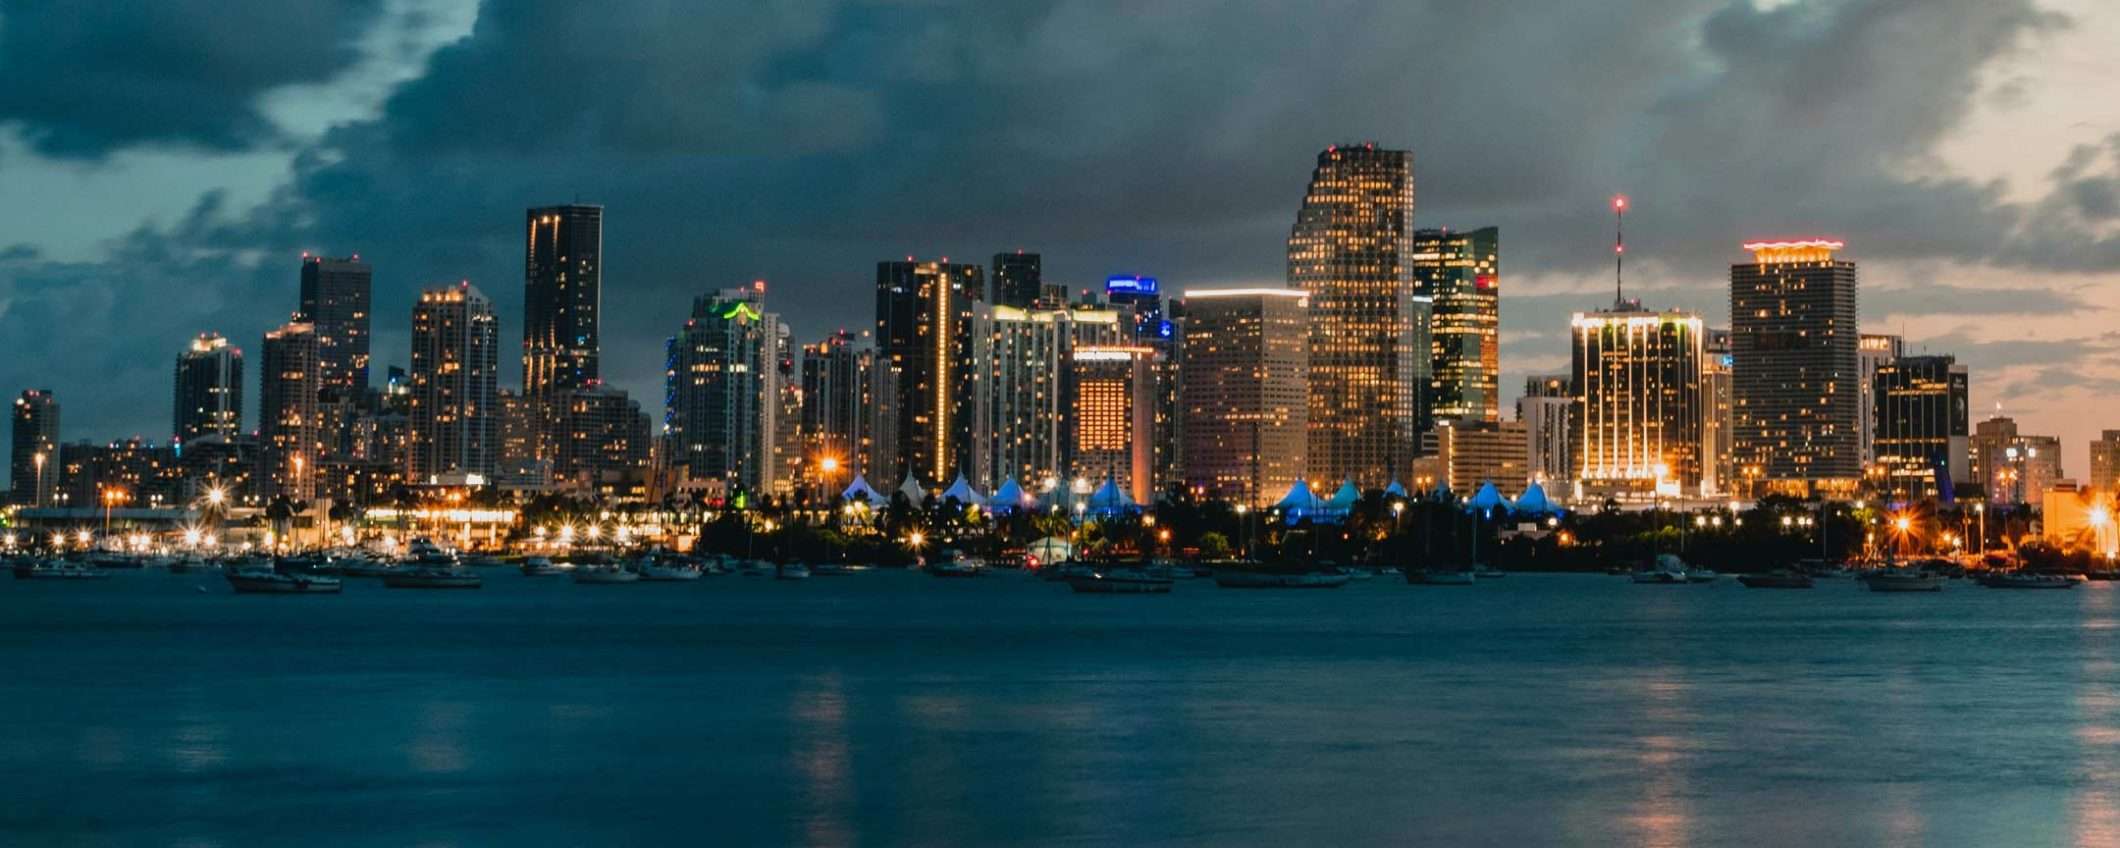 $MIA: Miami ha la sua criptovaluta, MiamiCoin